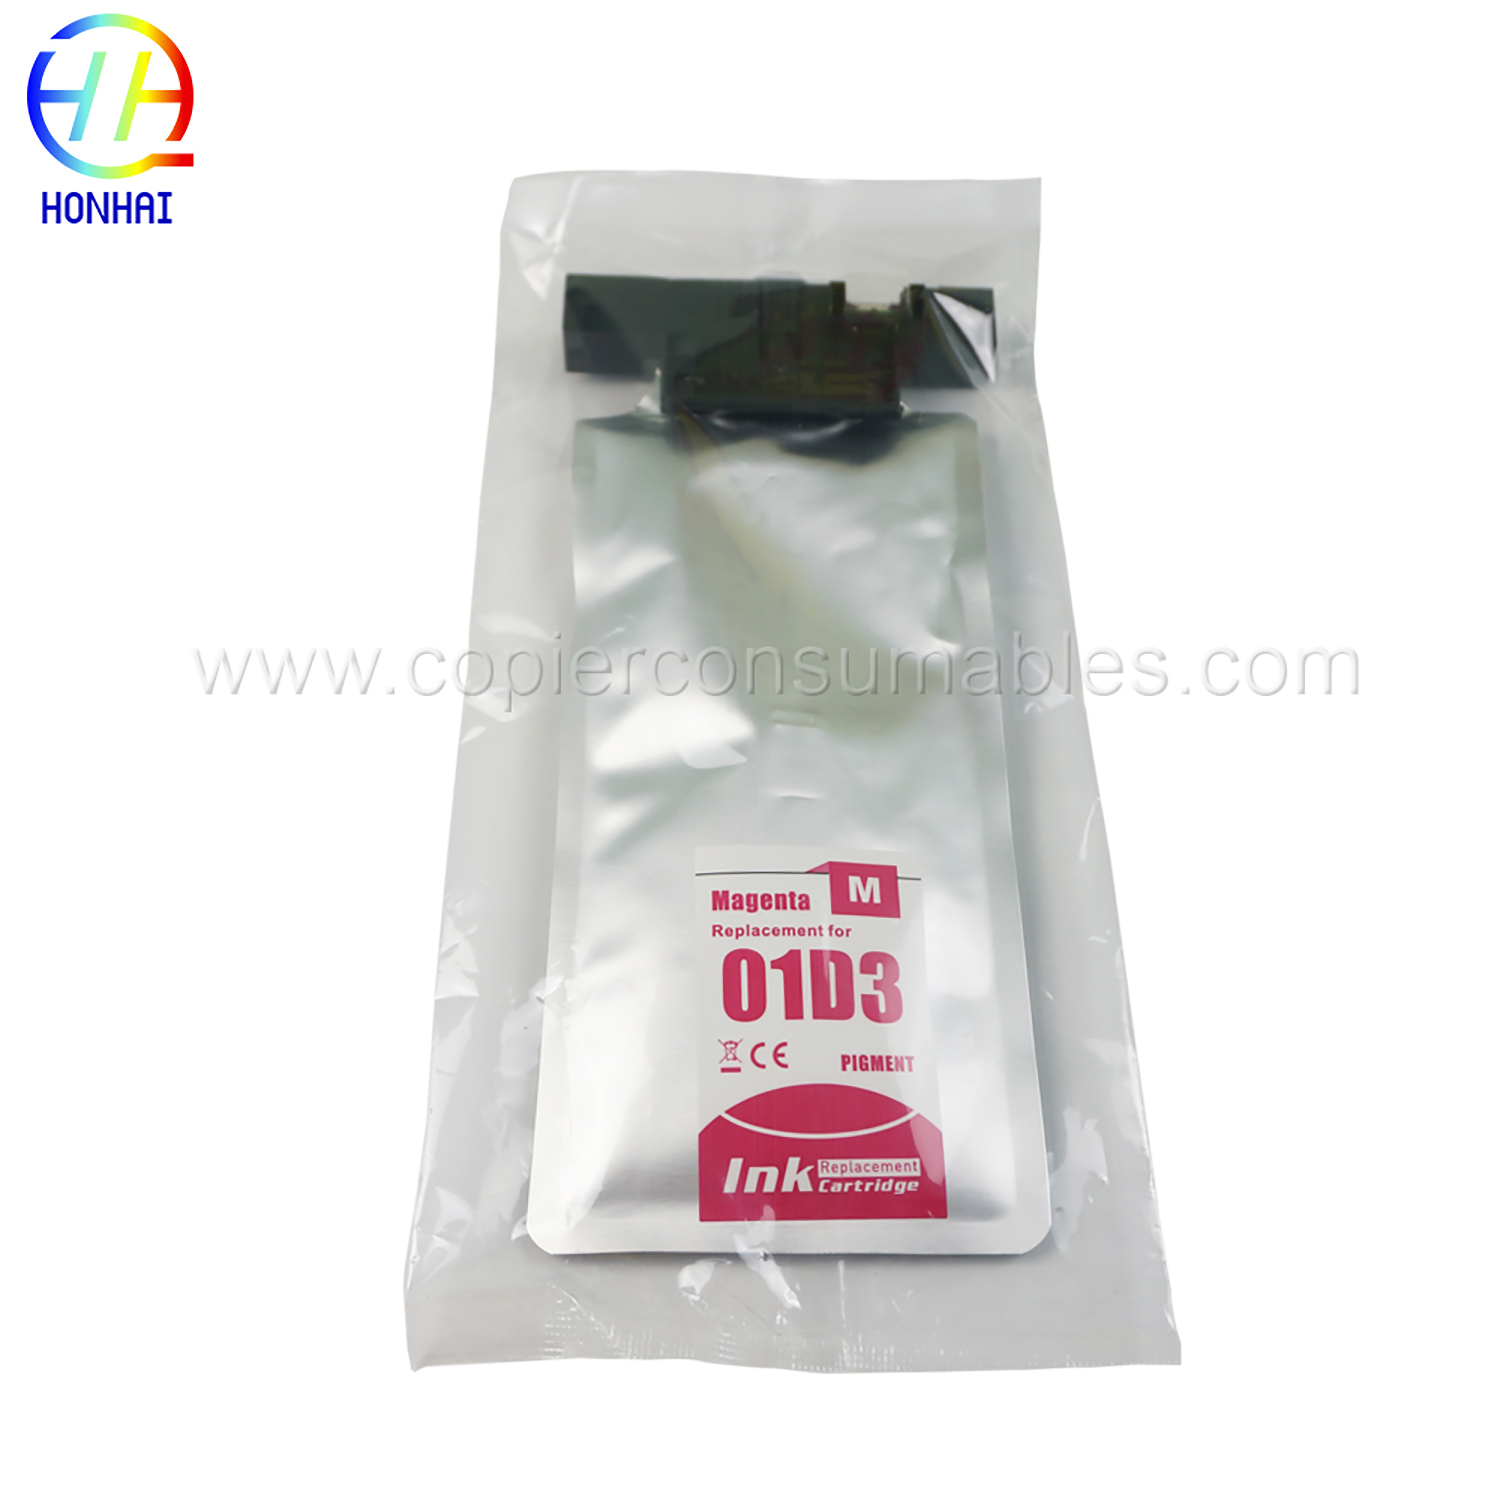 Ink bag for Epson WorkForce Pro WF-C529RWF-C529RDTWWF-C579RDTWFWF-C579RD2TWFWF-C579RDWF Series T01D3 (M) 220 ml (2)